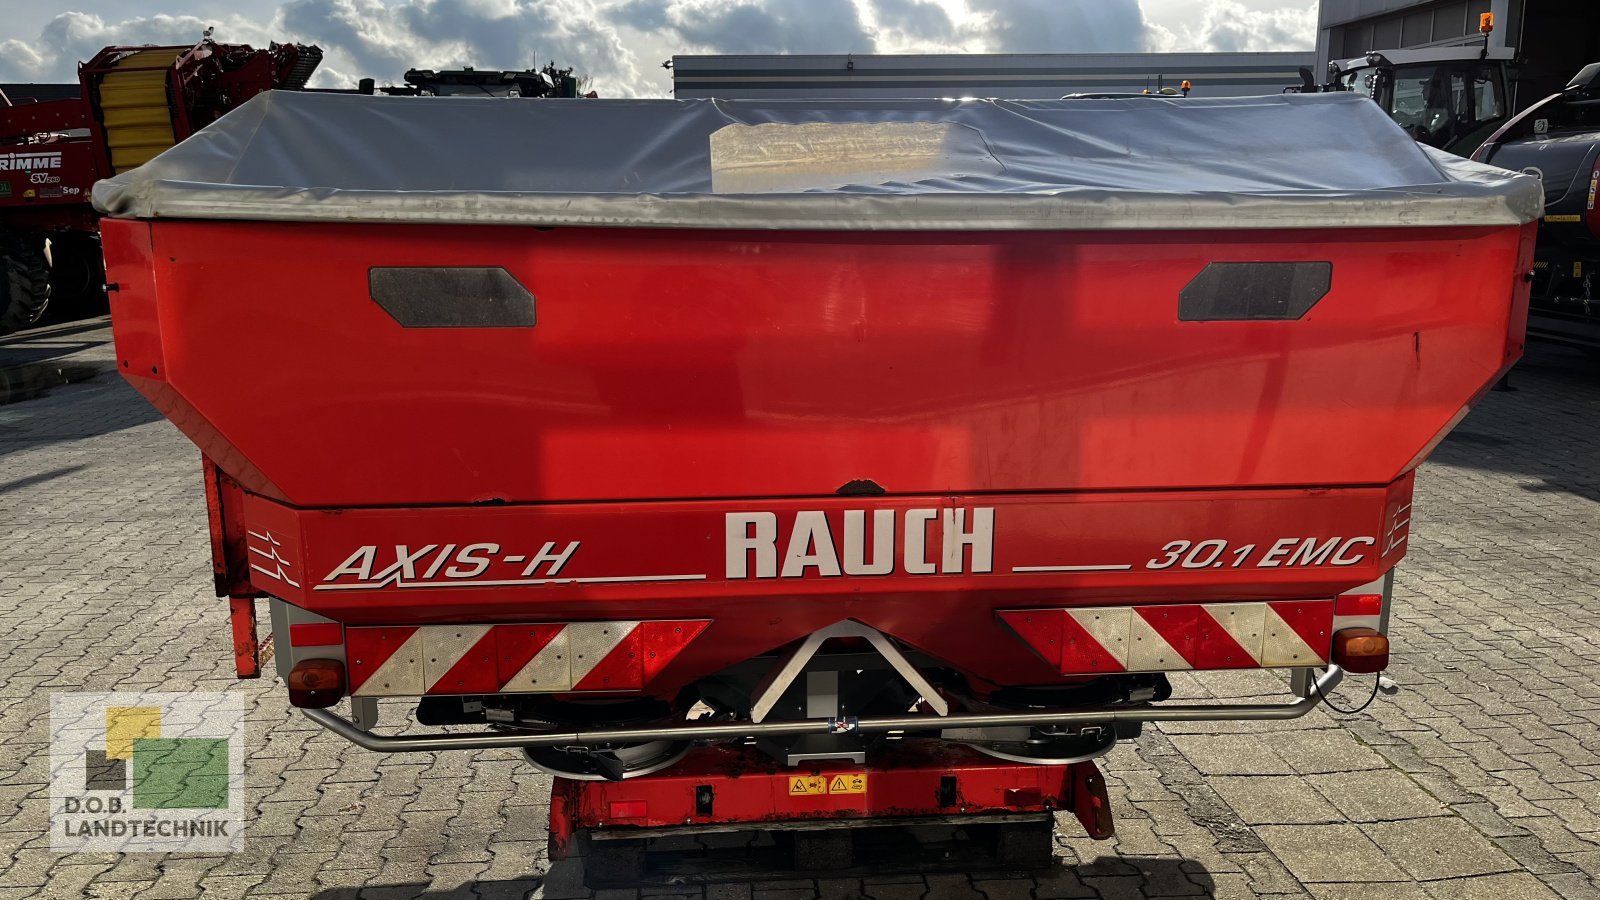 Düngerstreuer des Typs Rauch AXIS H 30.1 EMC, Gebrauchtmaschine in Regensburg (Bild 2)